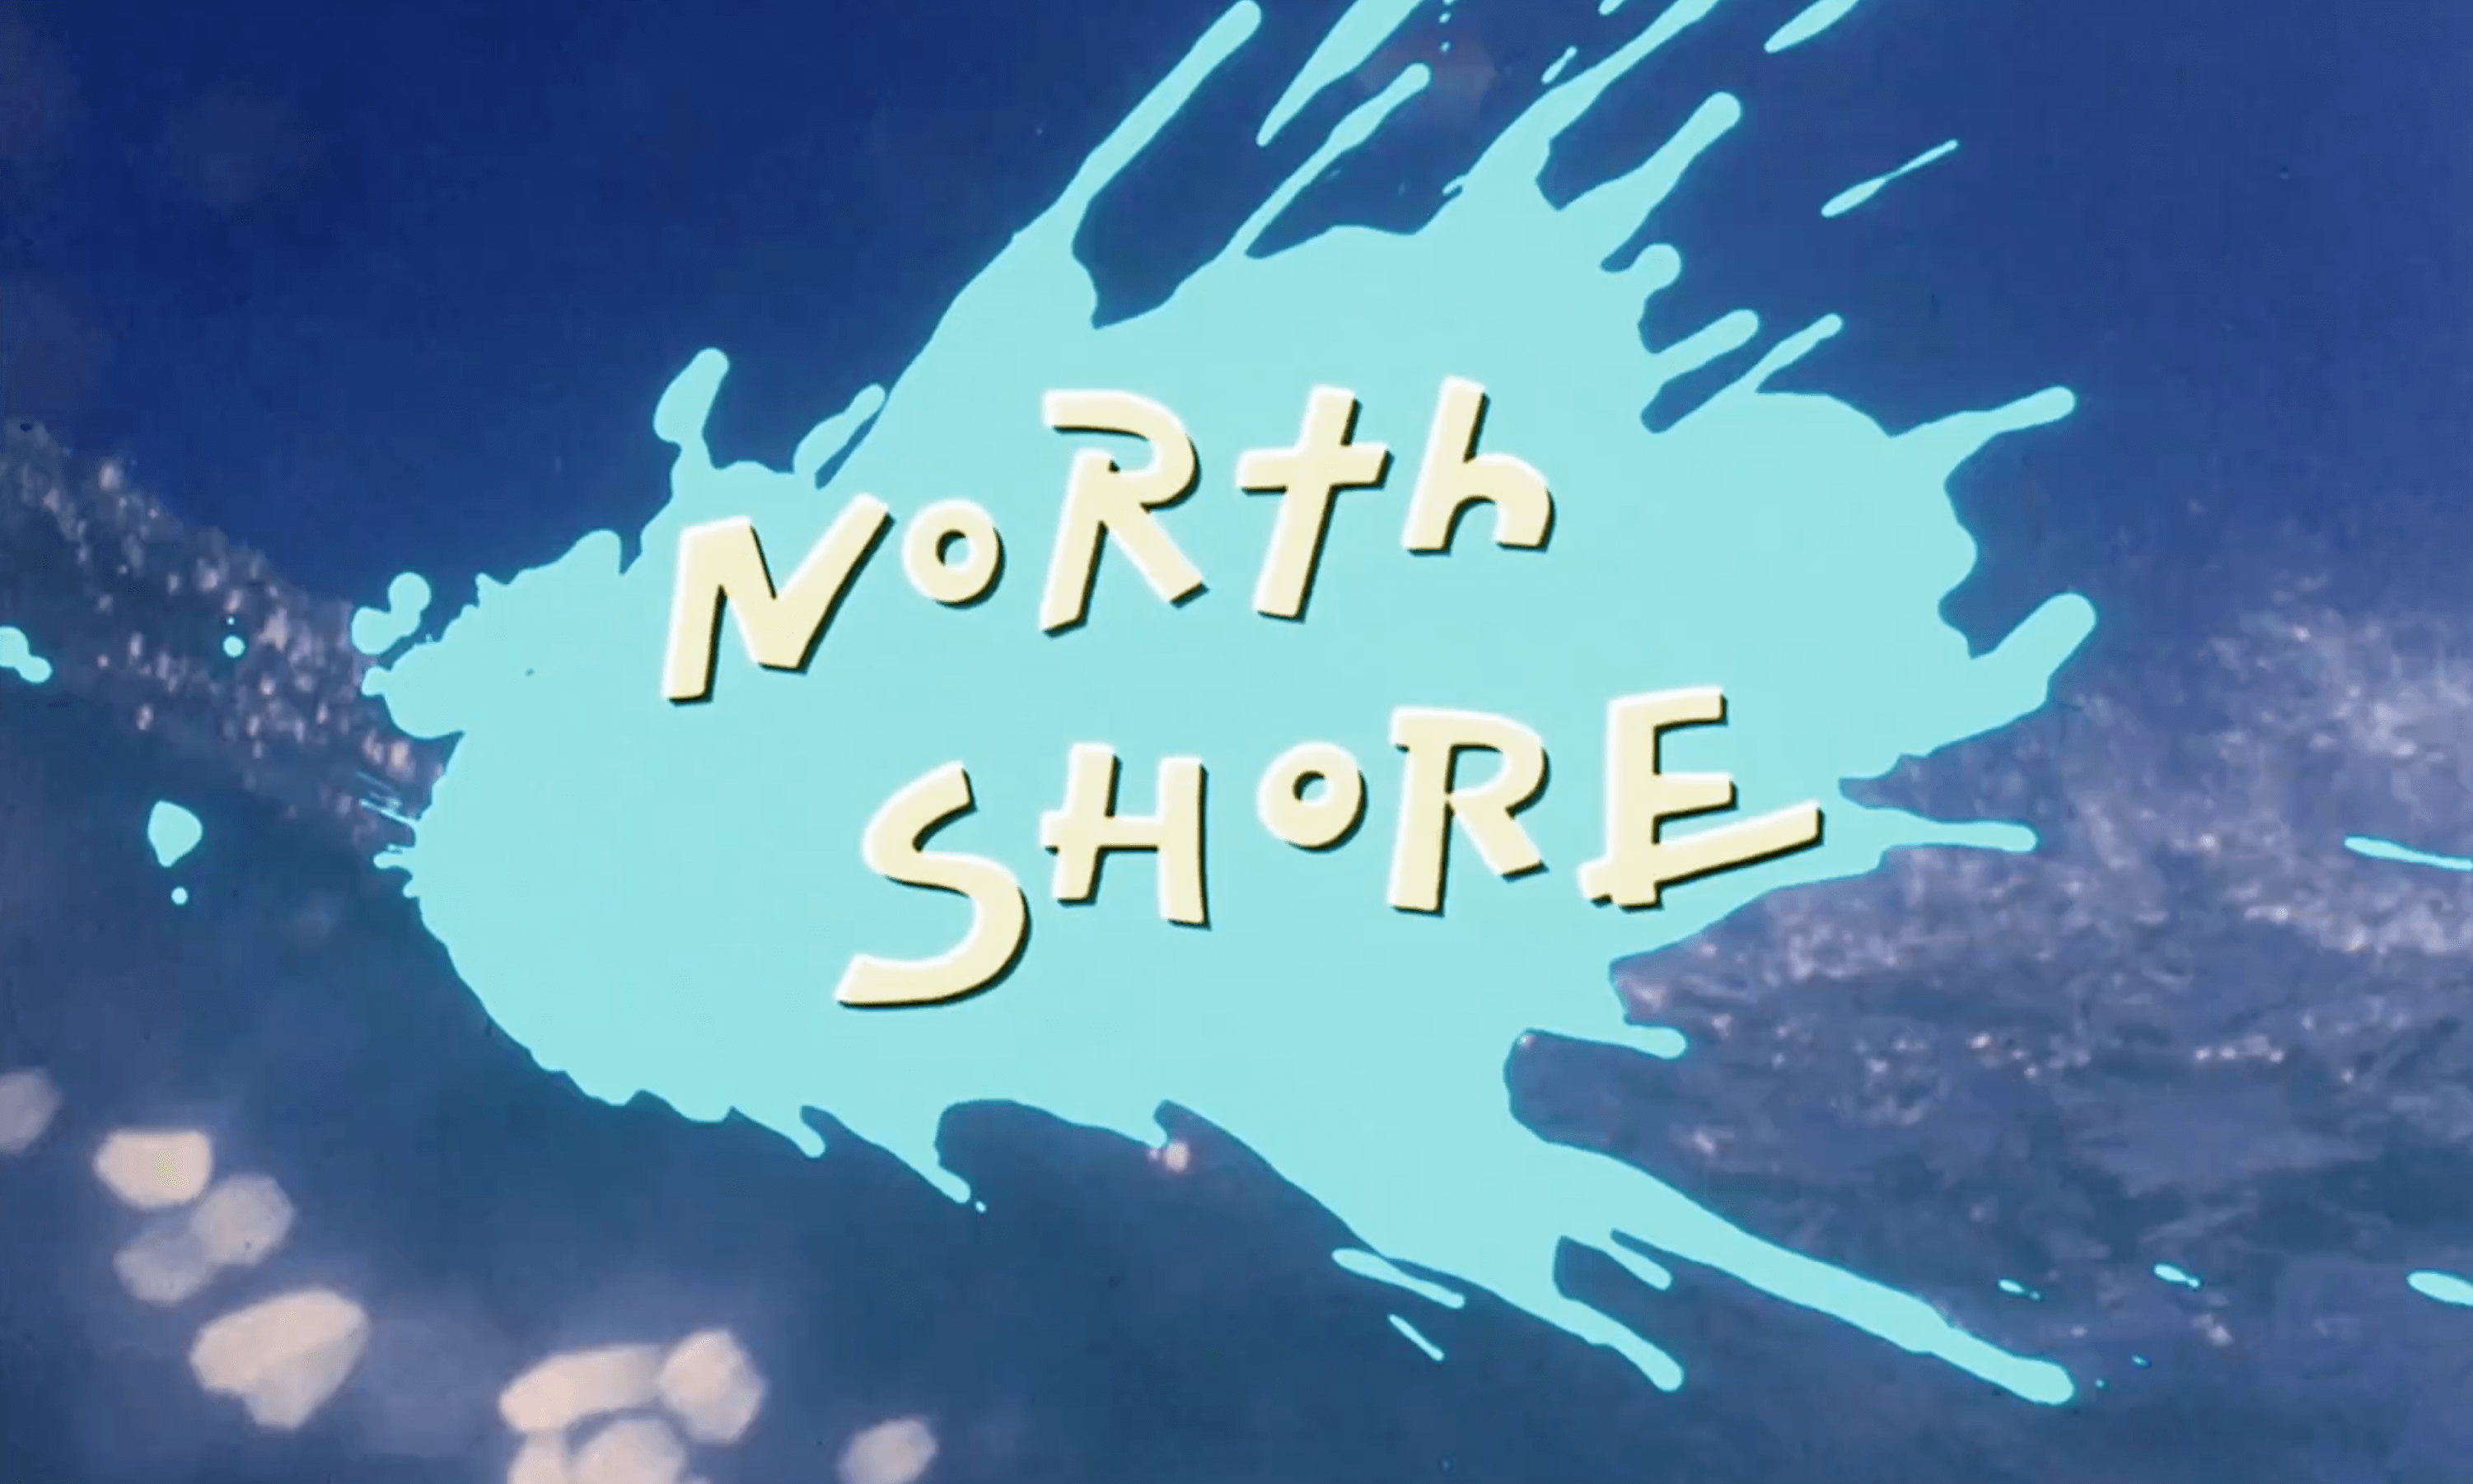 North Shore (1987. Я видел берега полные